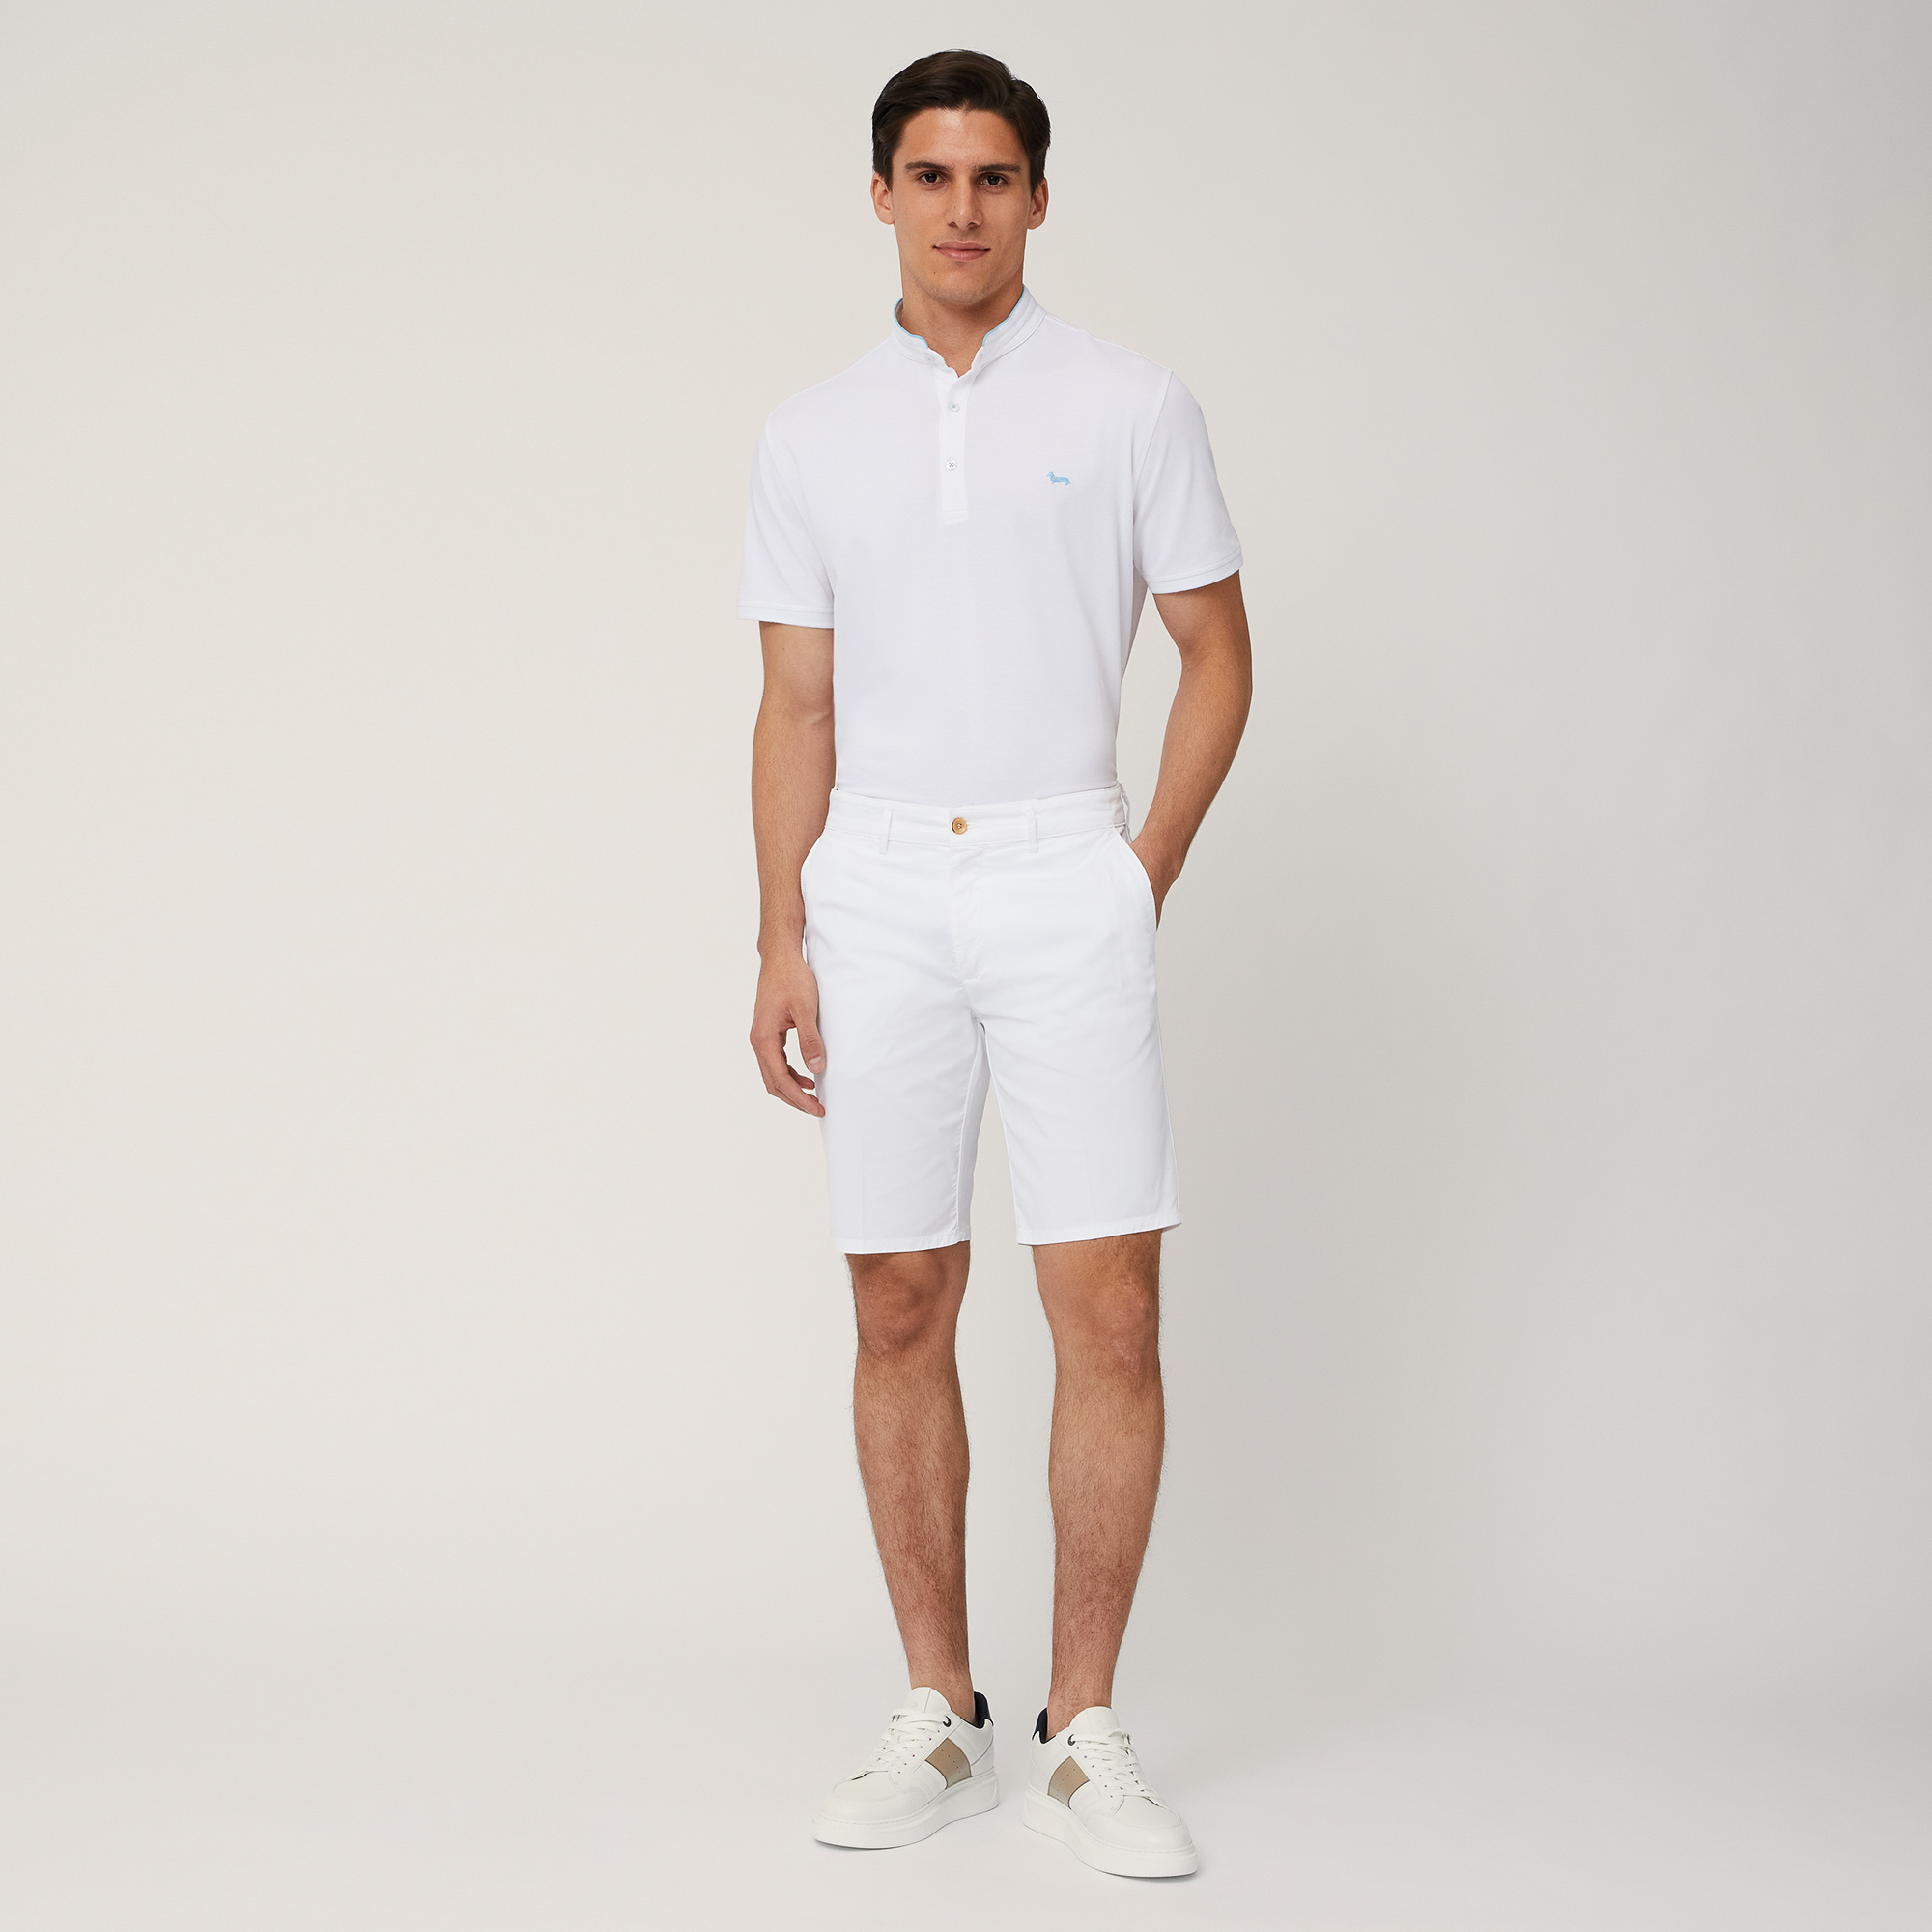 Regular Fit Bermuda Shorts, White, large image number 3